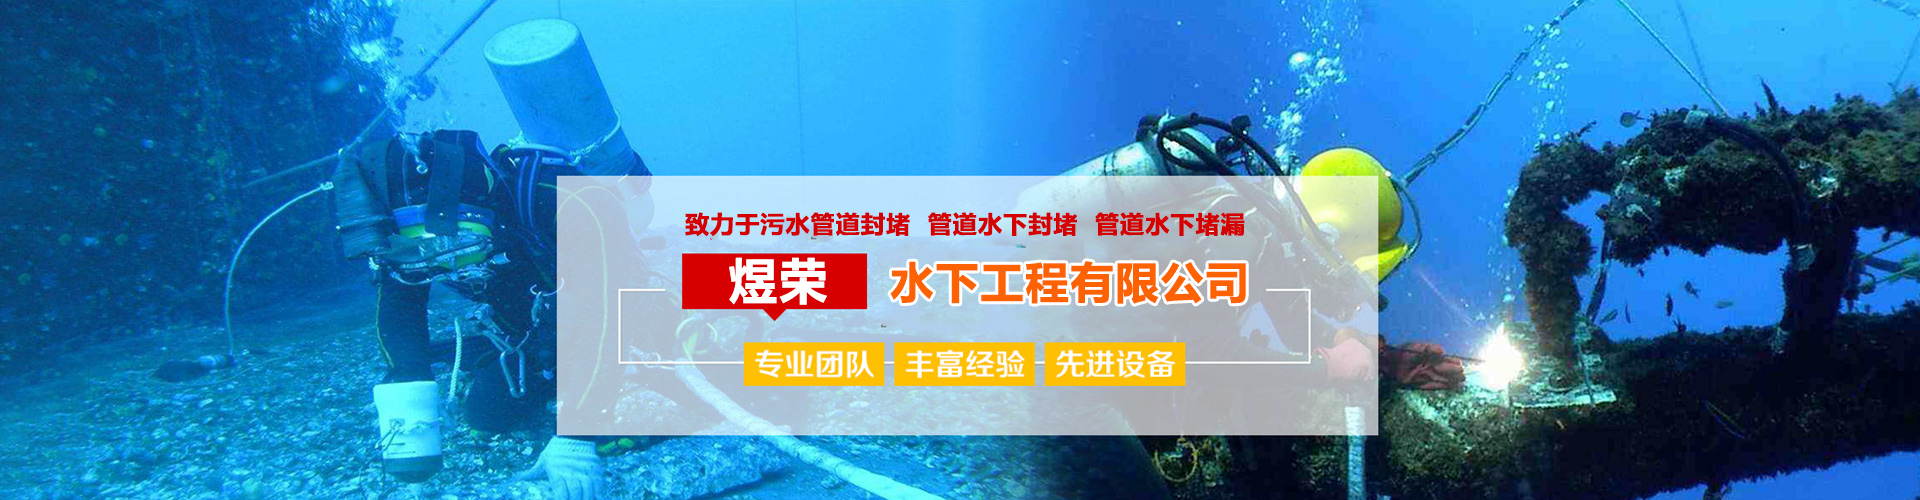 水下机器人、香港本地水下机器人、香港、香港水下机器人